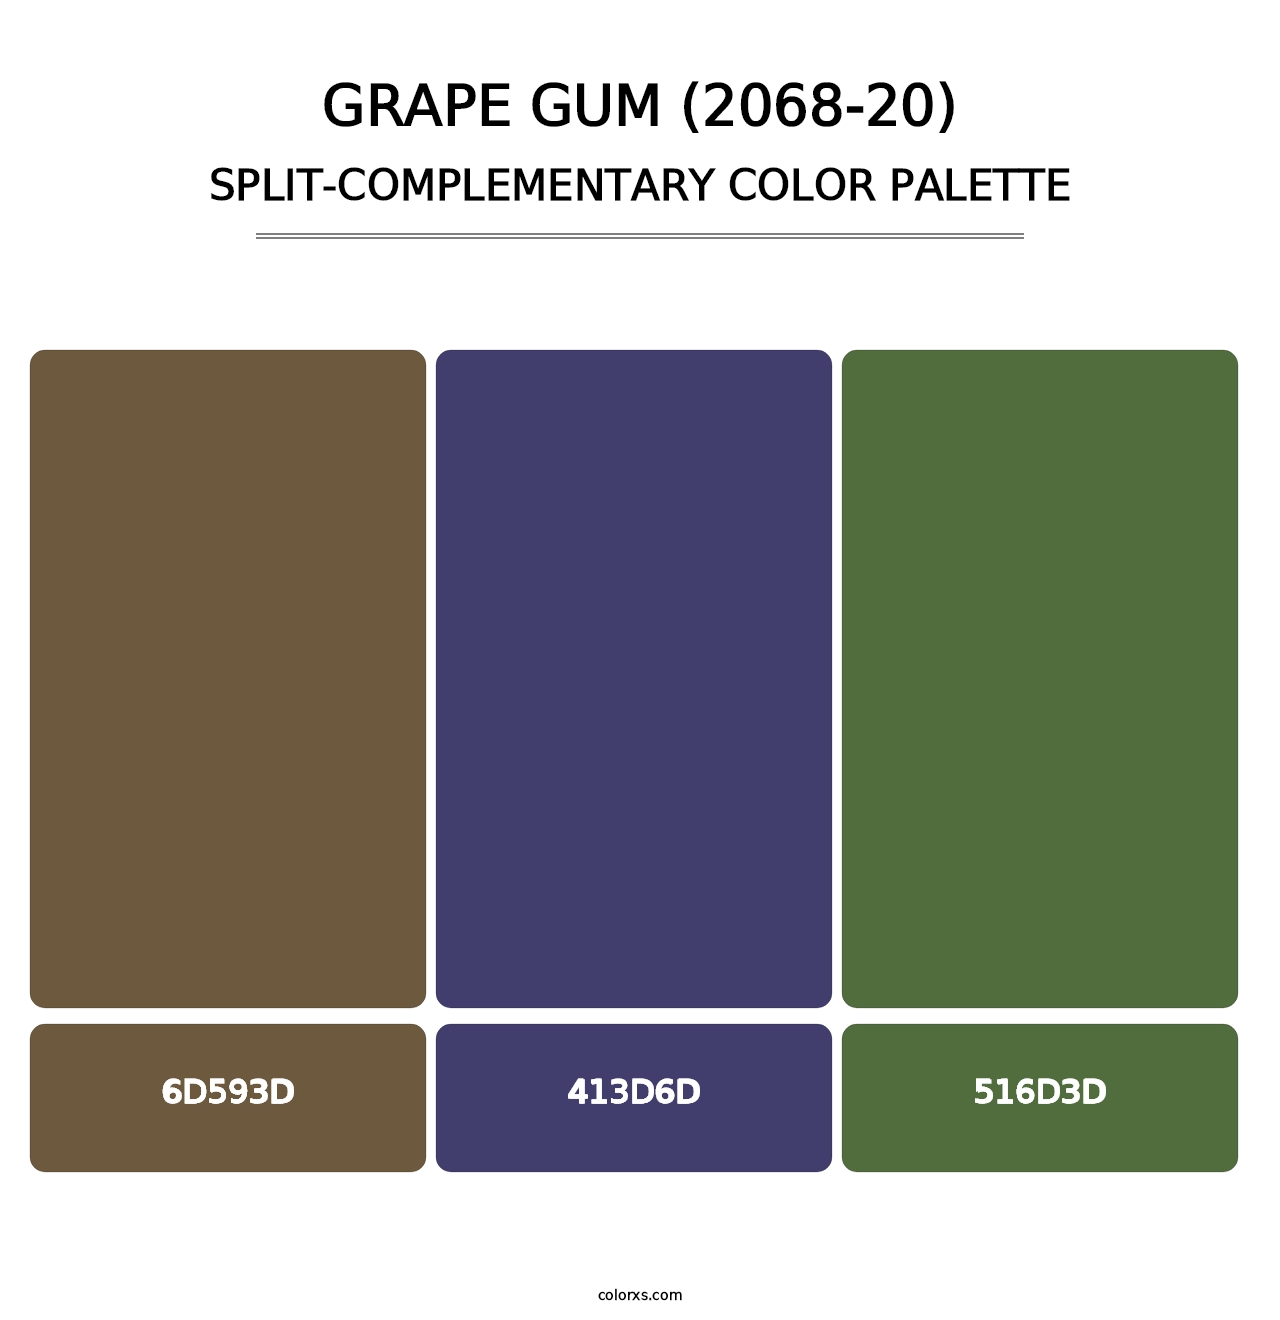 Grape Gum (2068-20) - Split-Complementary Color Palette